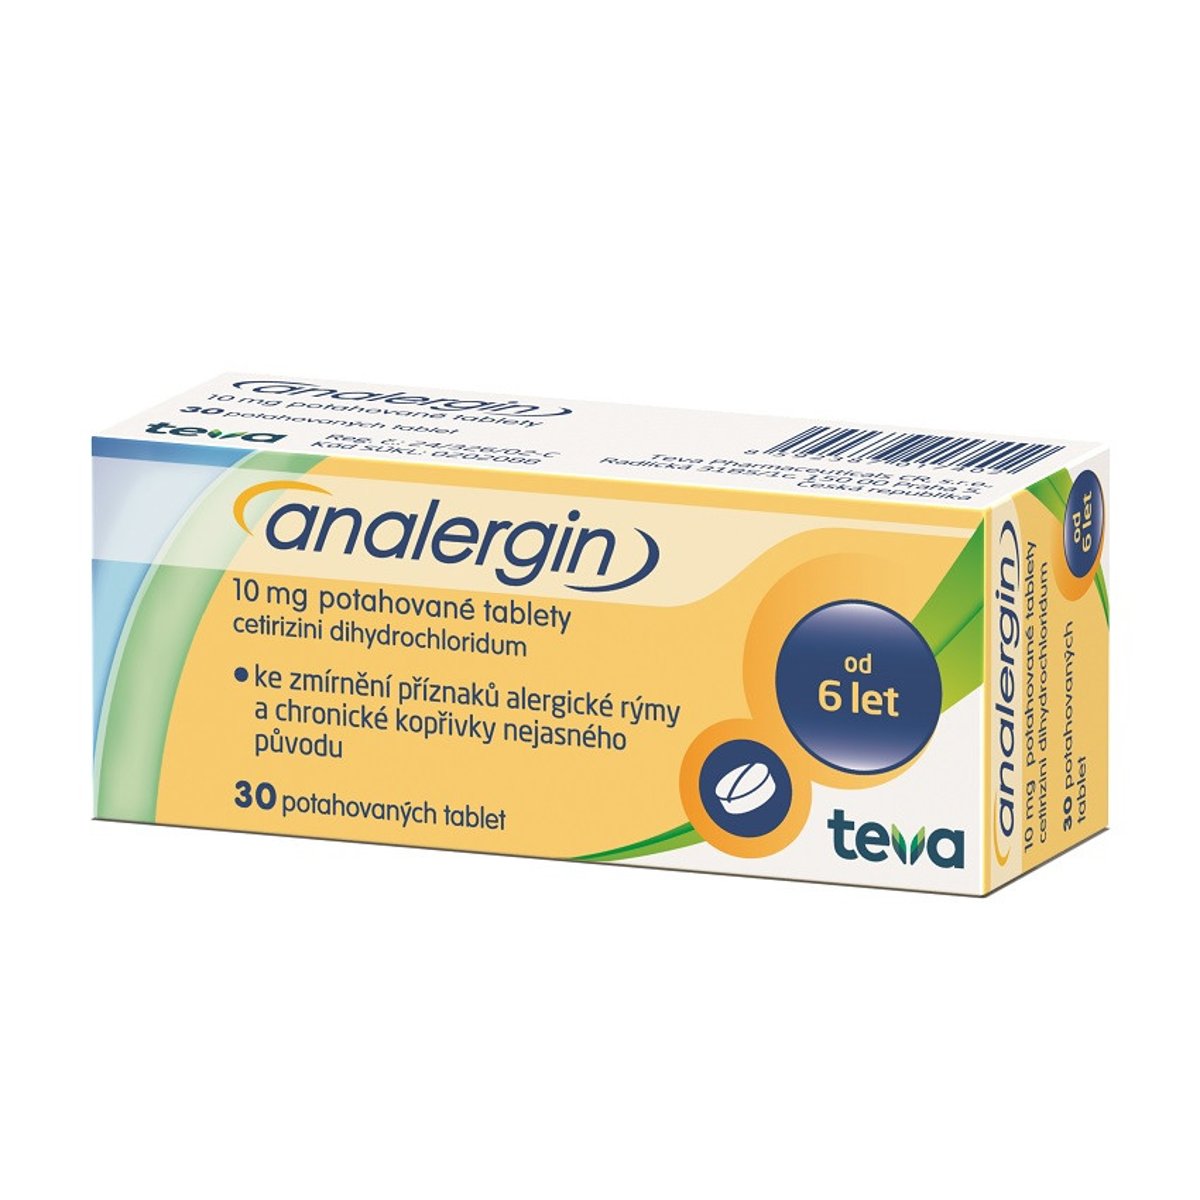 ANALERGIN 10MG potahované tablety 30